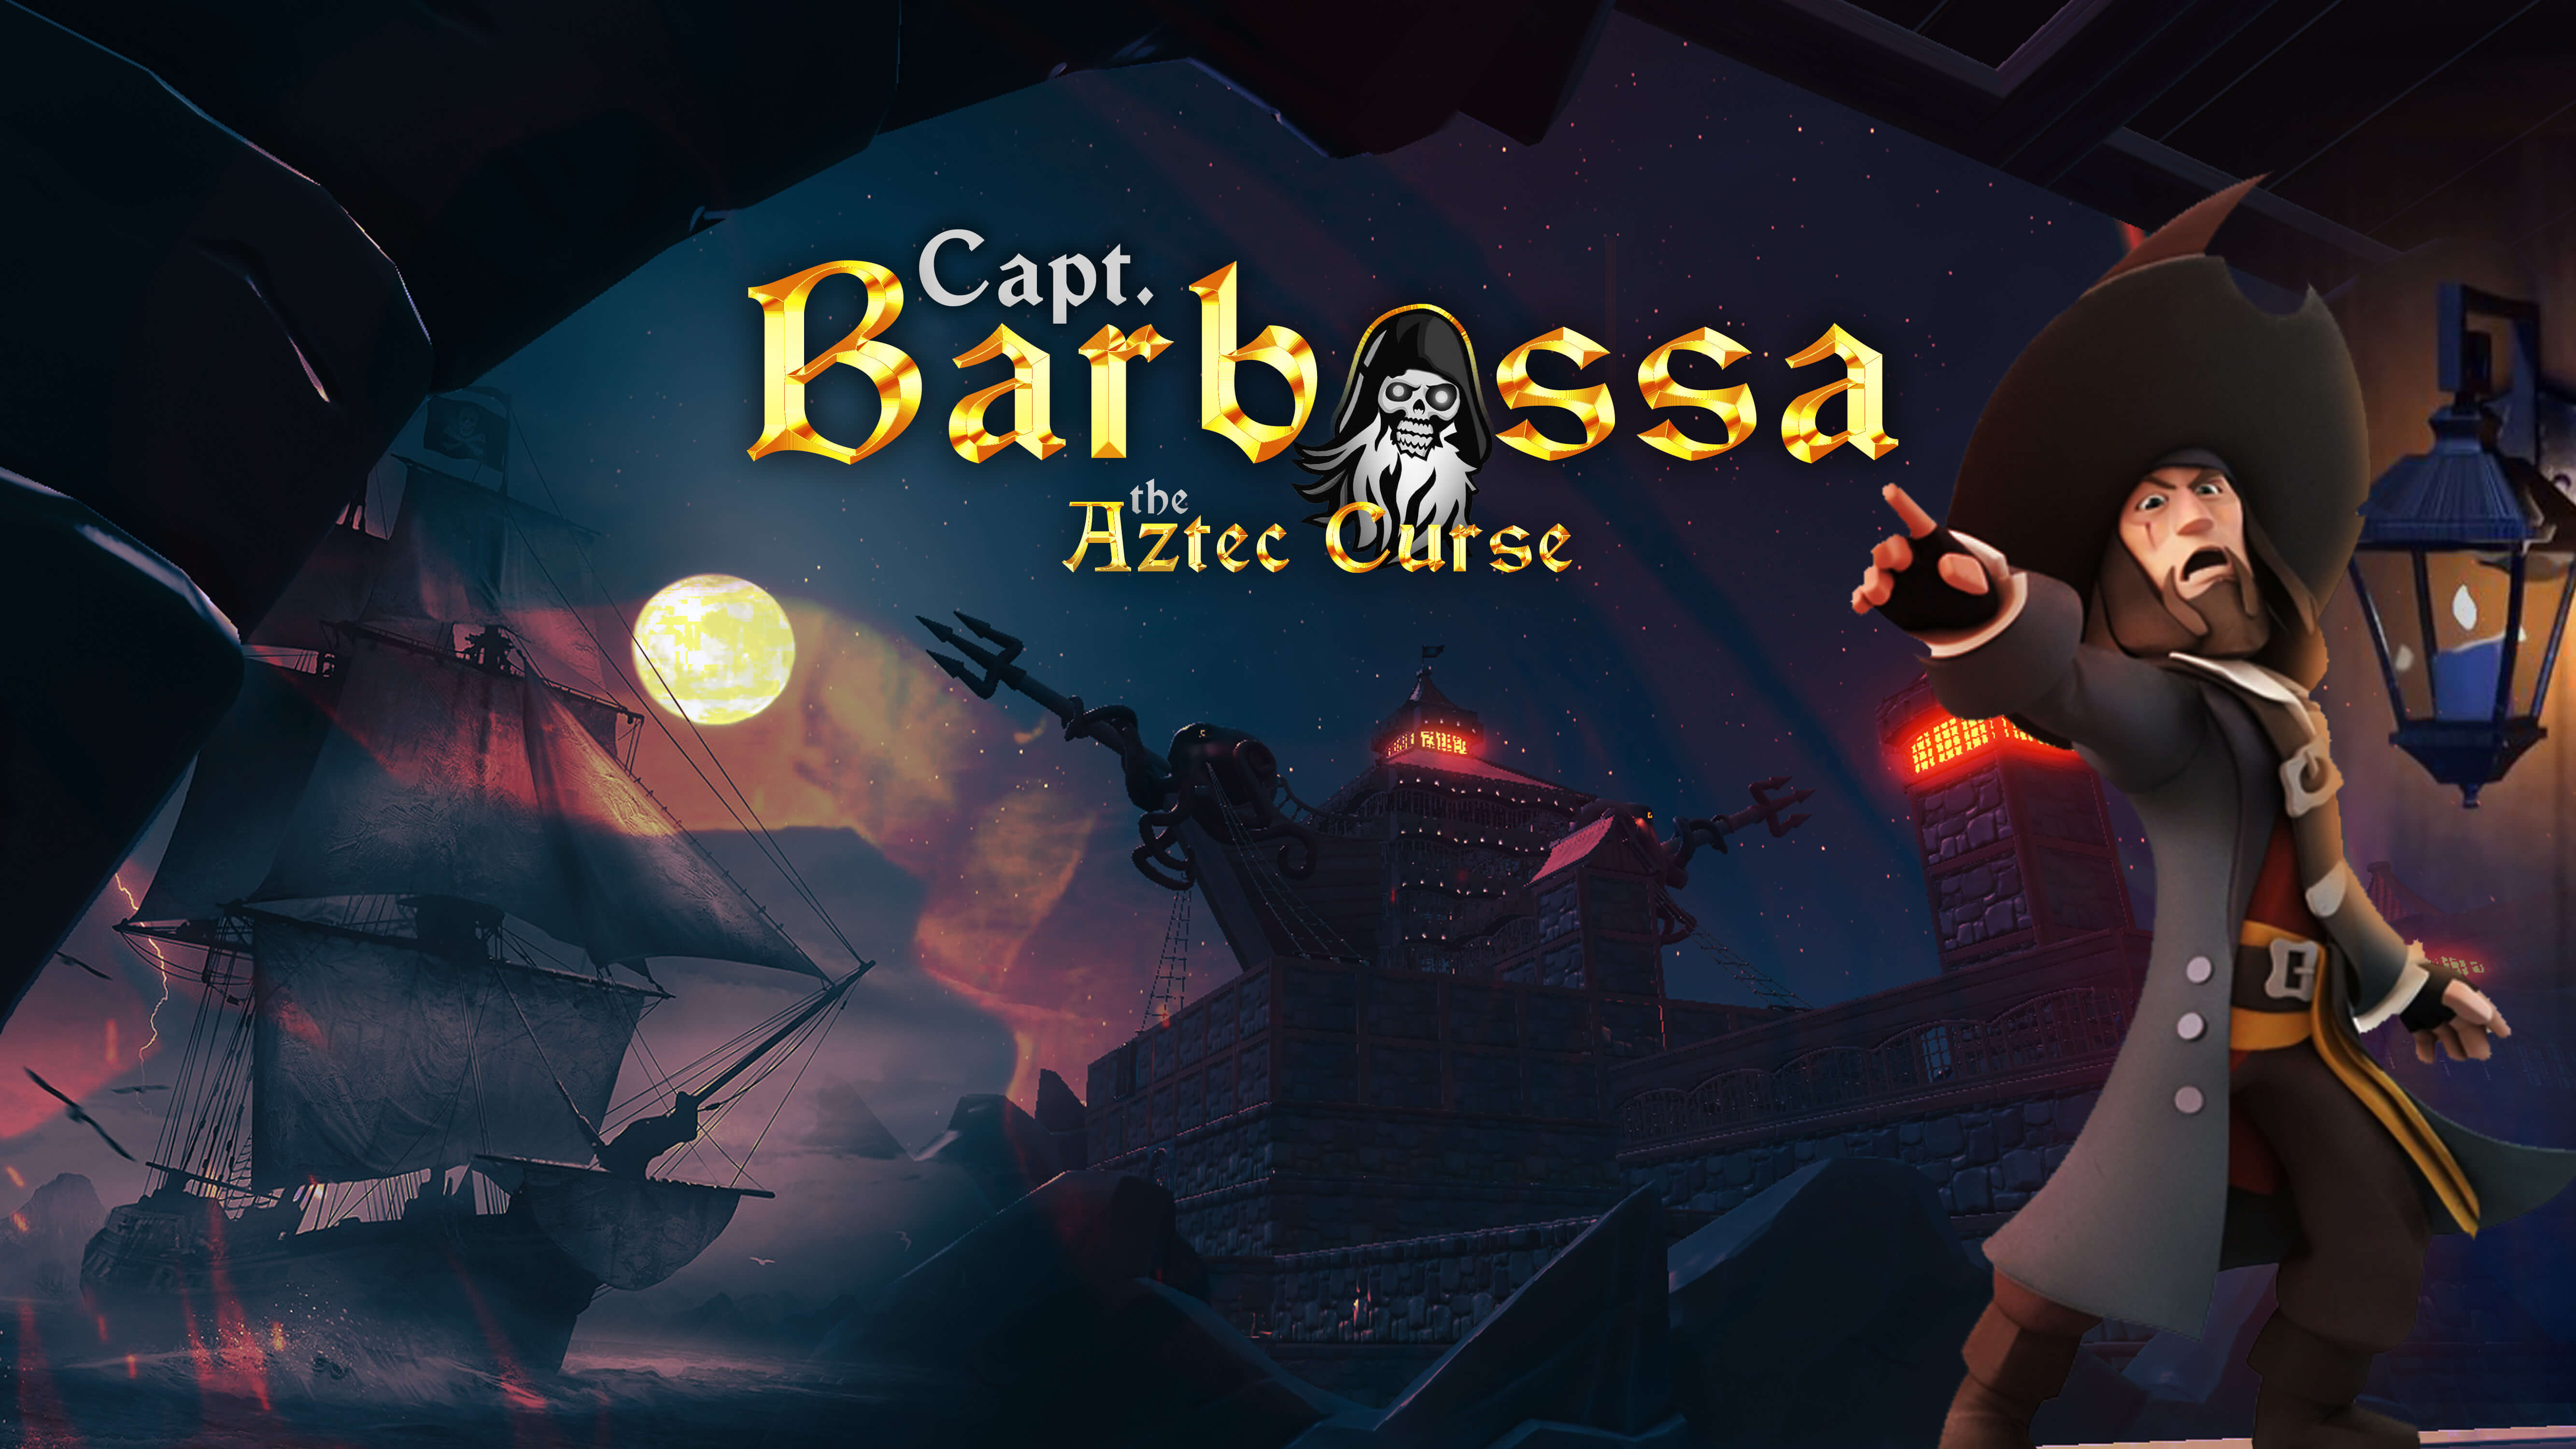 CAPT. BARBOSSA THE AZTEC CURSE